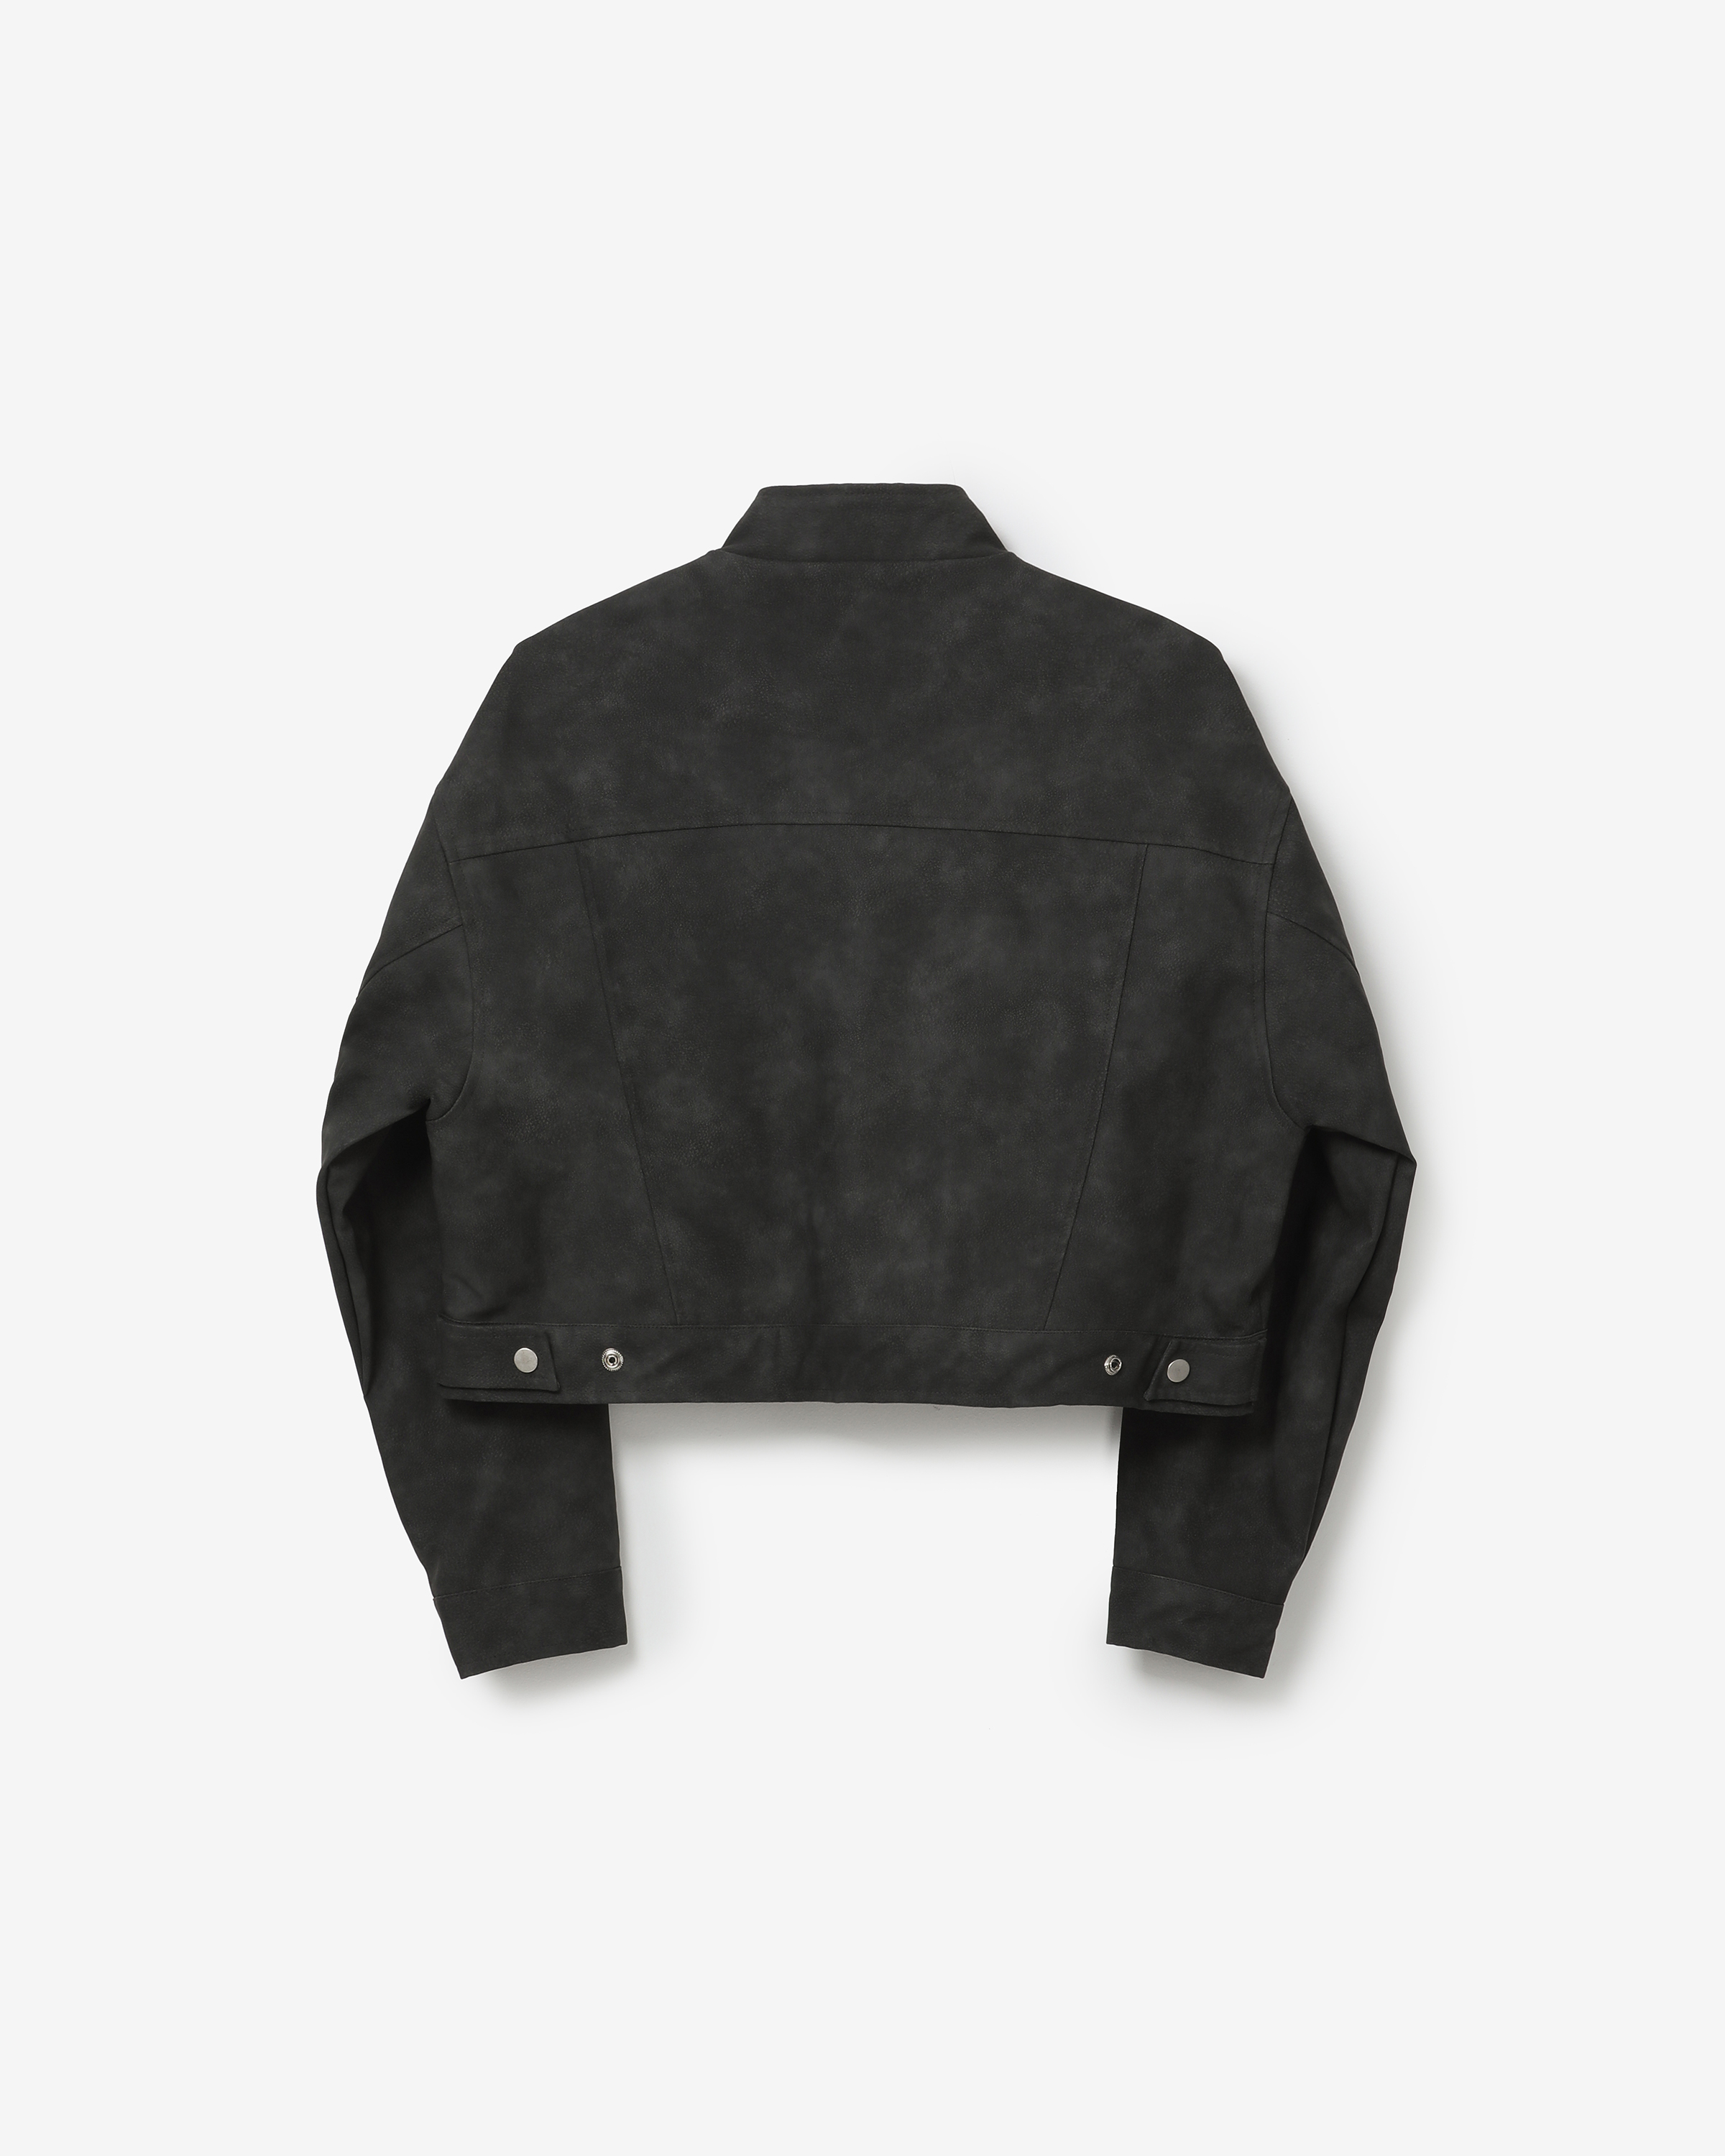 vegan leather biker jacket [ natural black ]